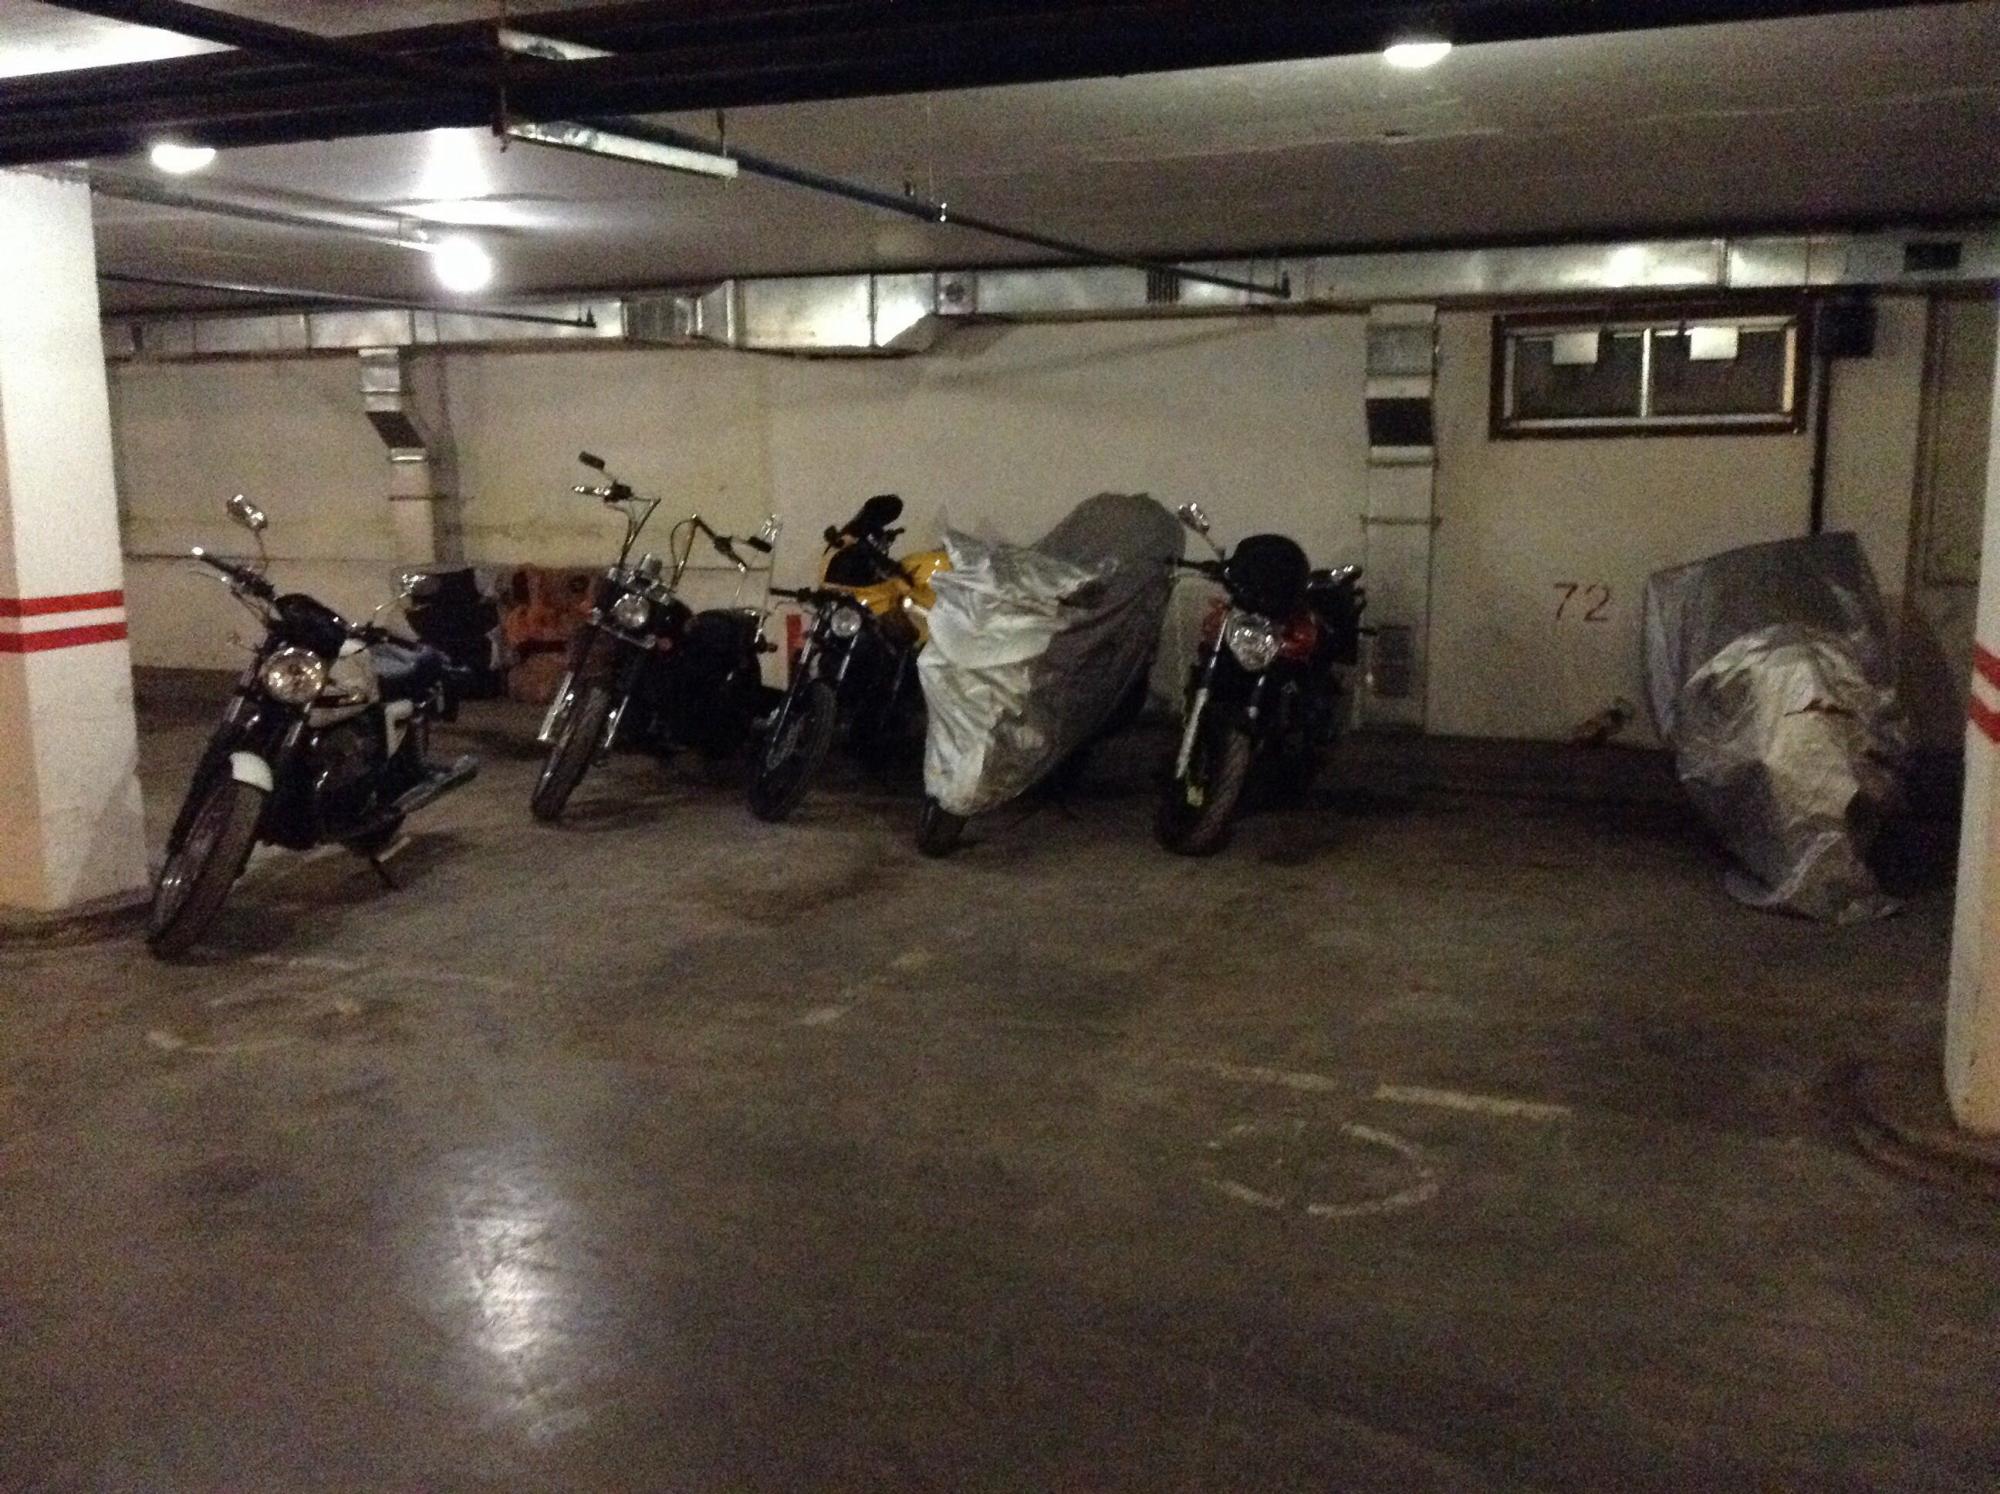 Охранник украл мотоцикл с одной из стоянок Читы и пытался его продать